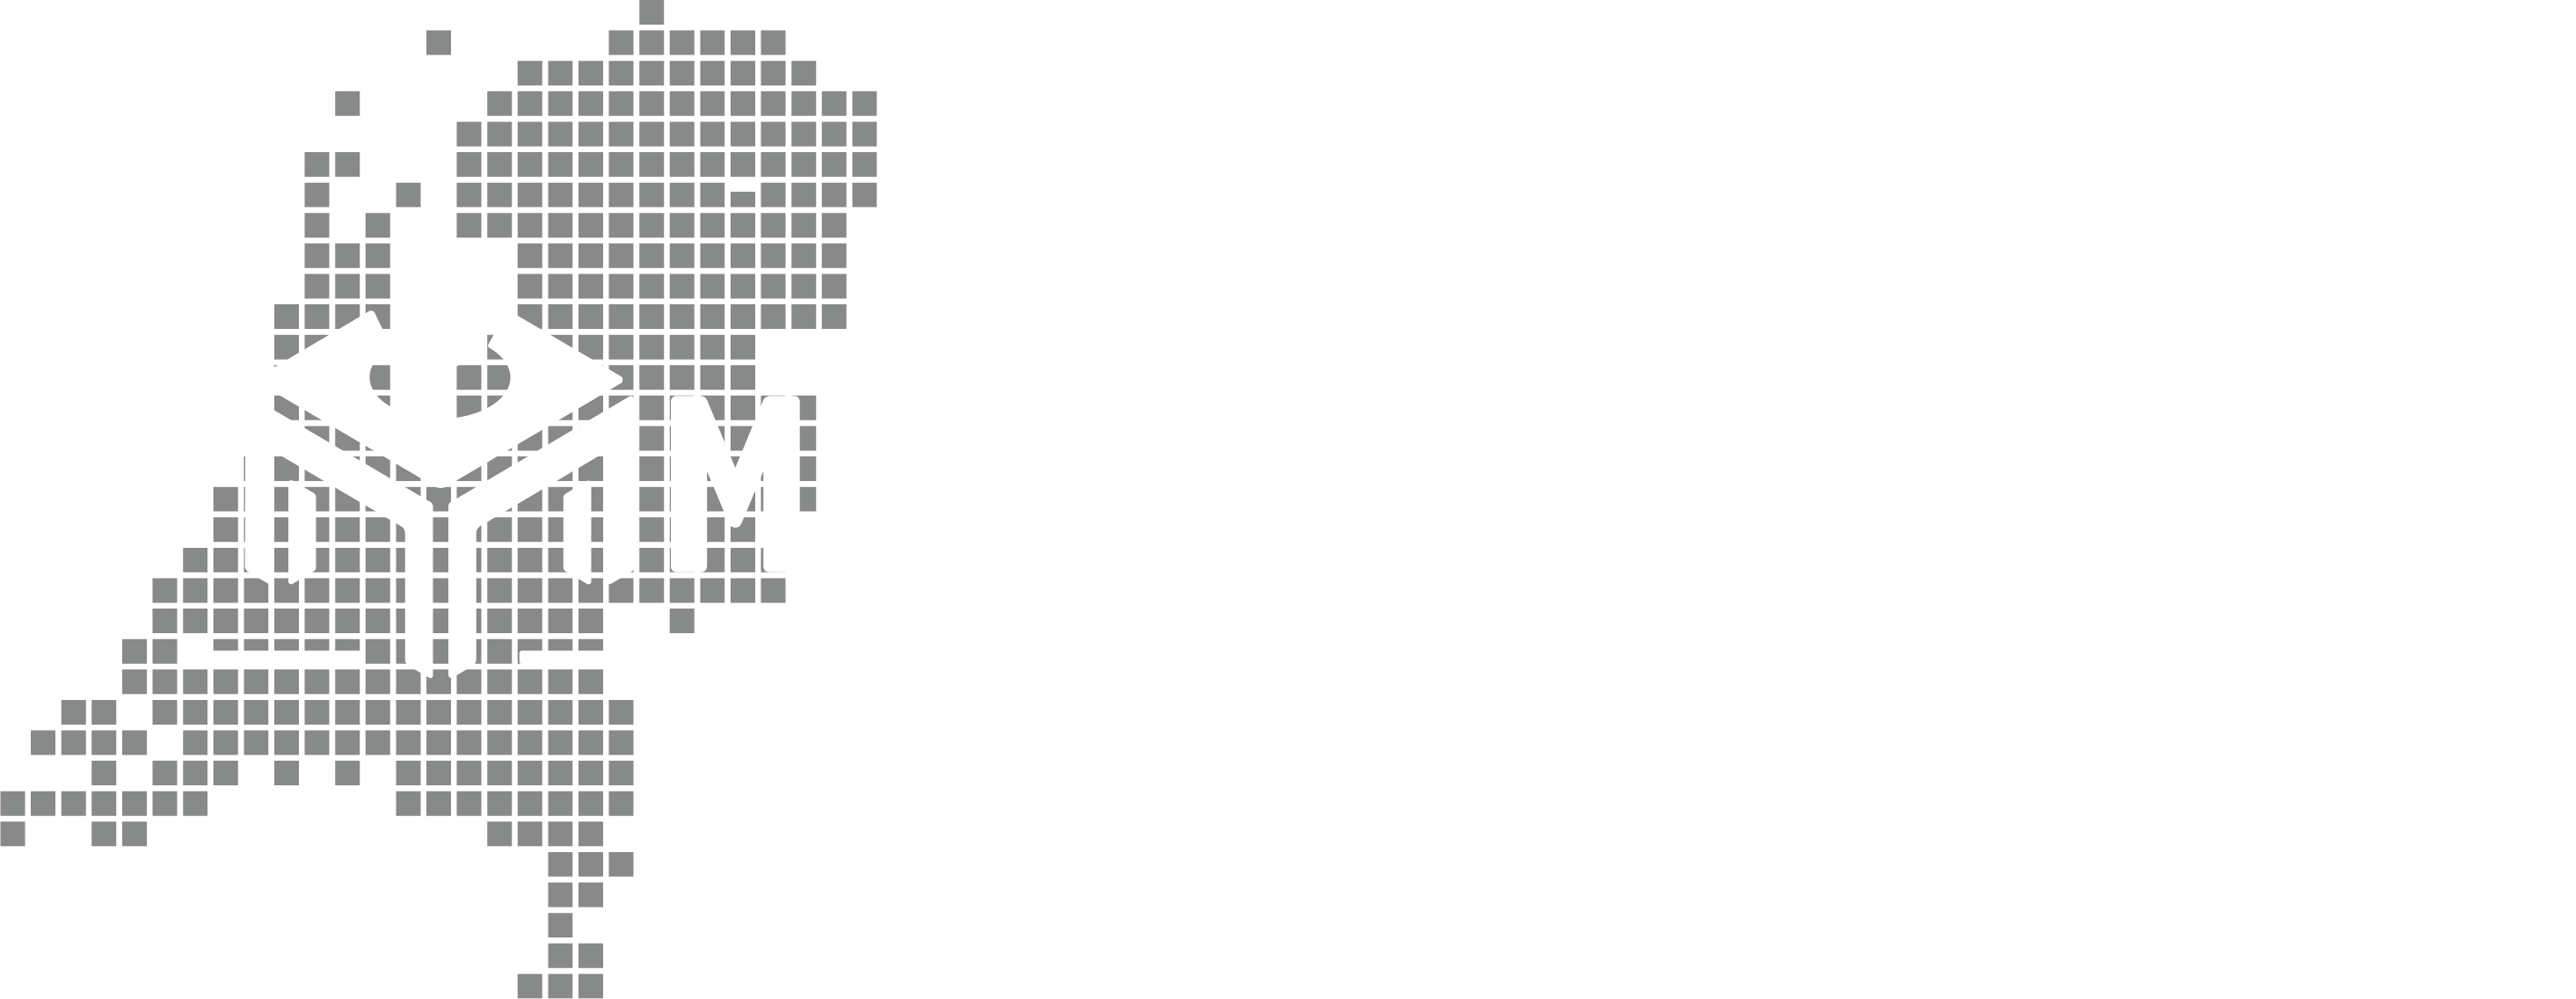 Logo Meubelsmonteren.nl diapositief